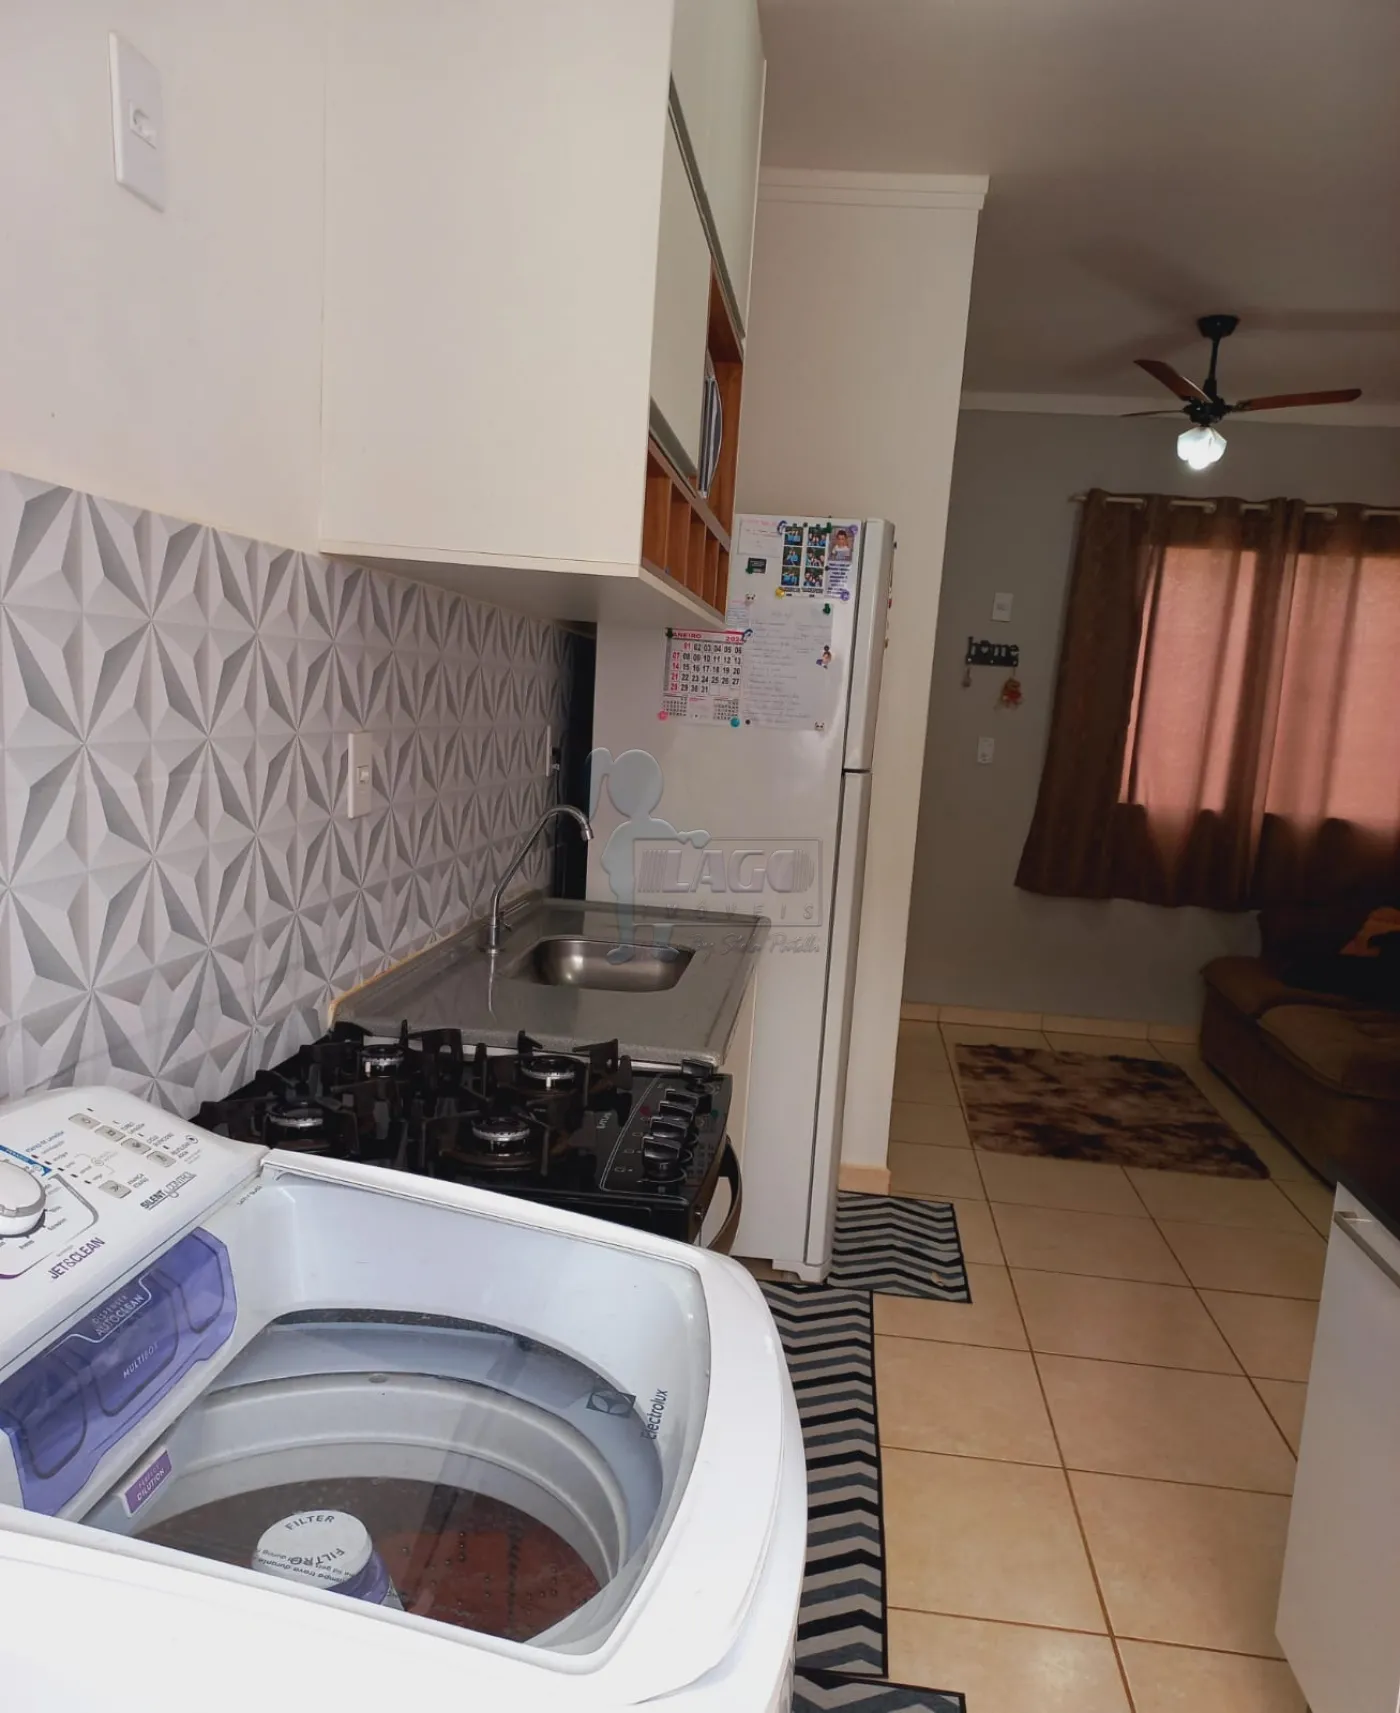 Comprar Apartamento / Padrão em Ribeirão Preto R$ 145.000,00 - Foto 10